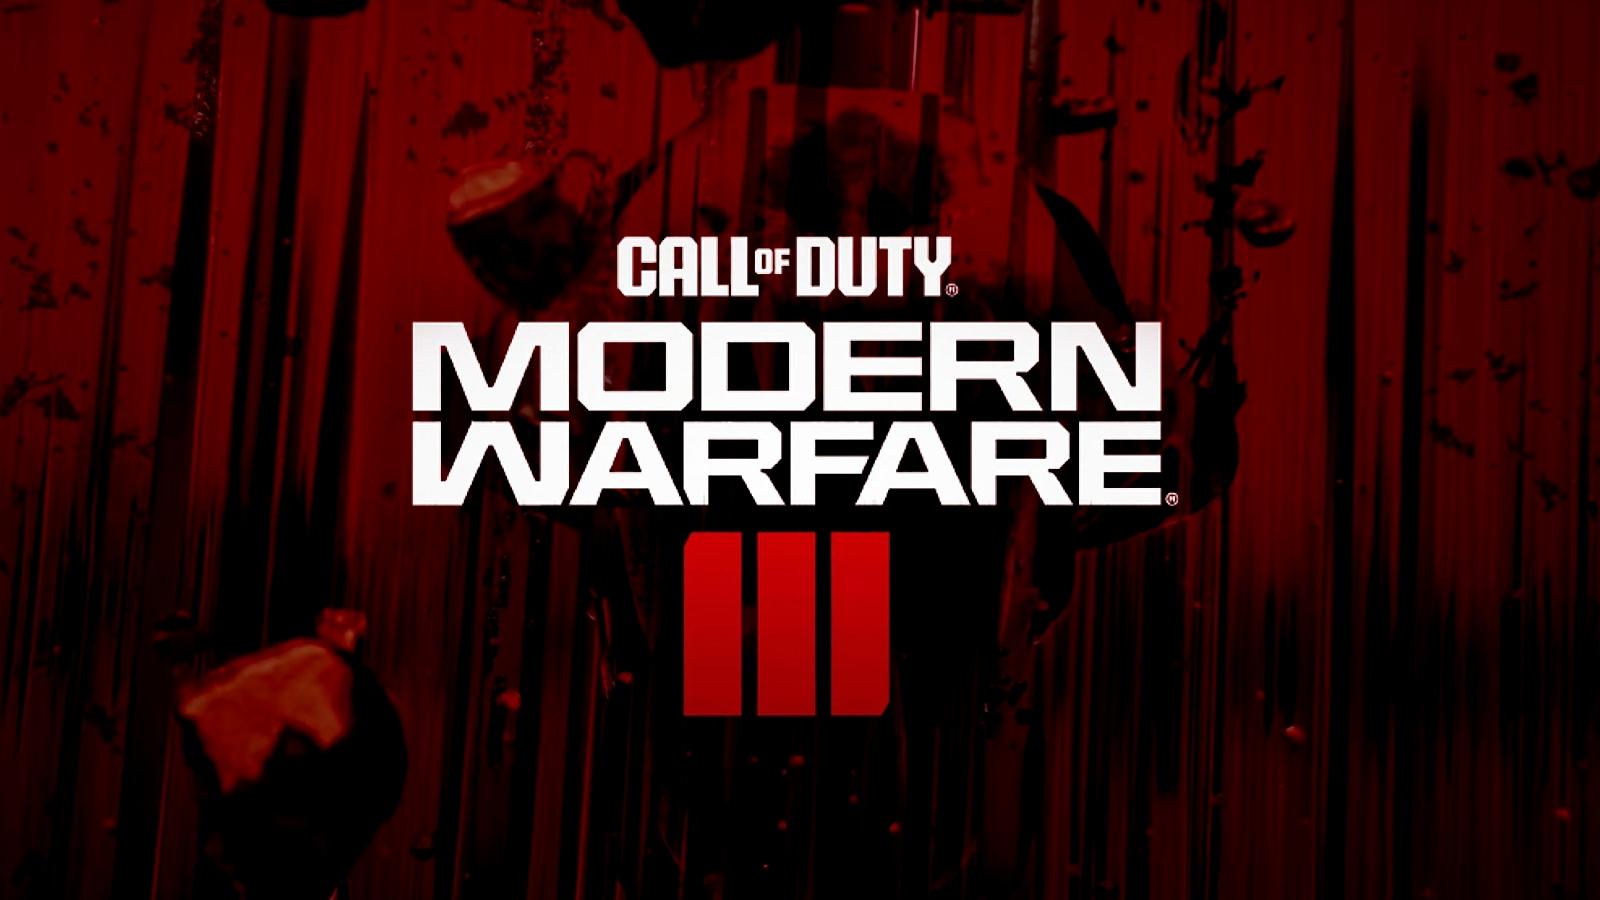 ผมผิดอะไร! Modern Warfare 3 เวอร์ชั่นเก่าโดนถล่มรีวิวแง่ลบ เพราะเข้าใจผิดคิดว่าภาคใหม่